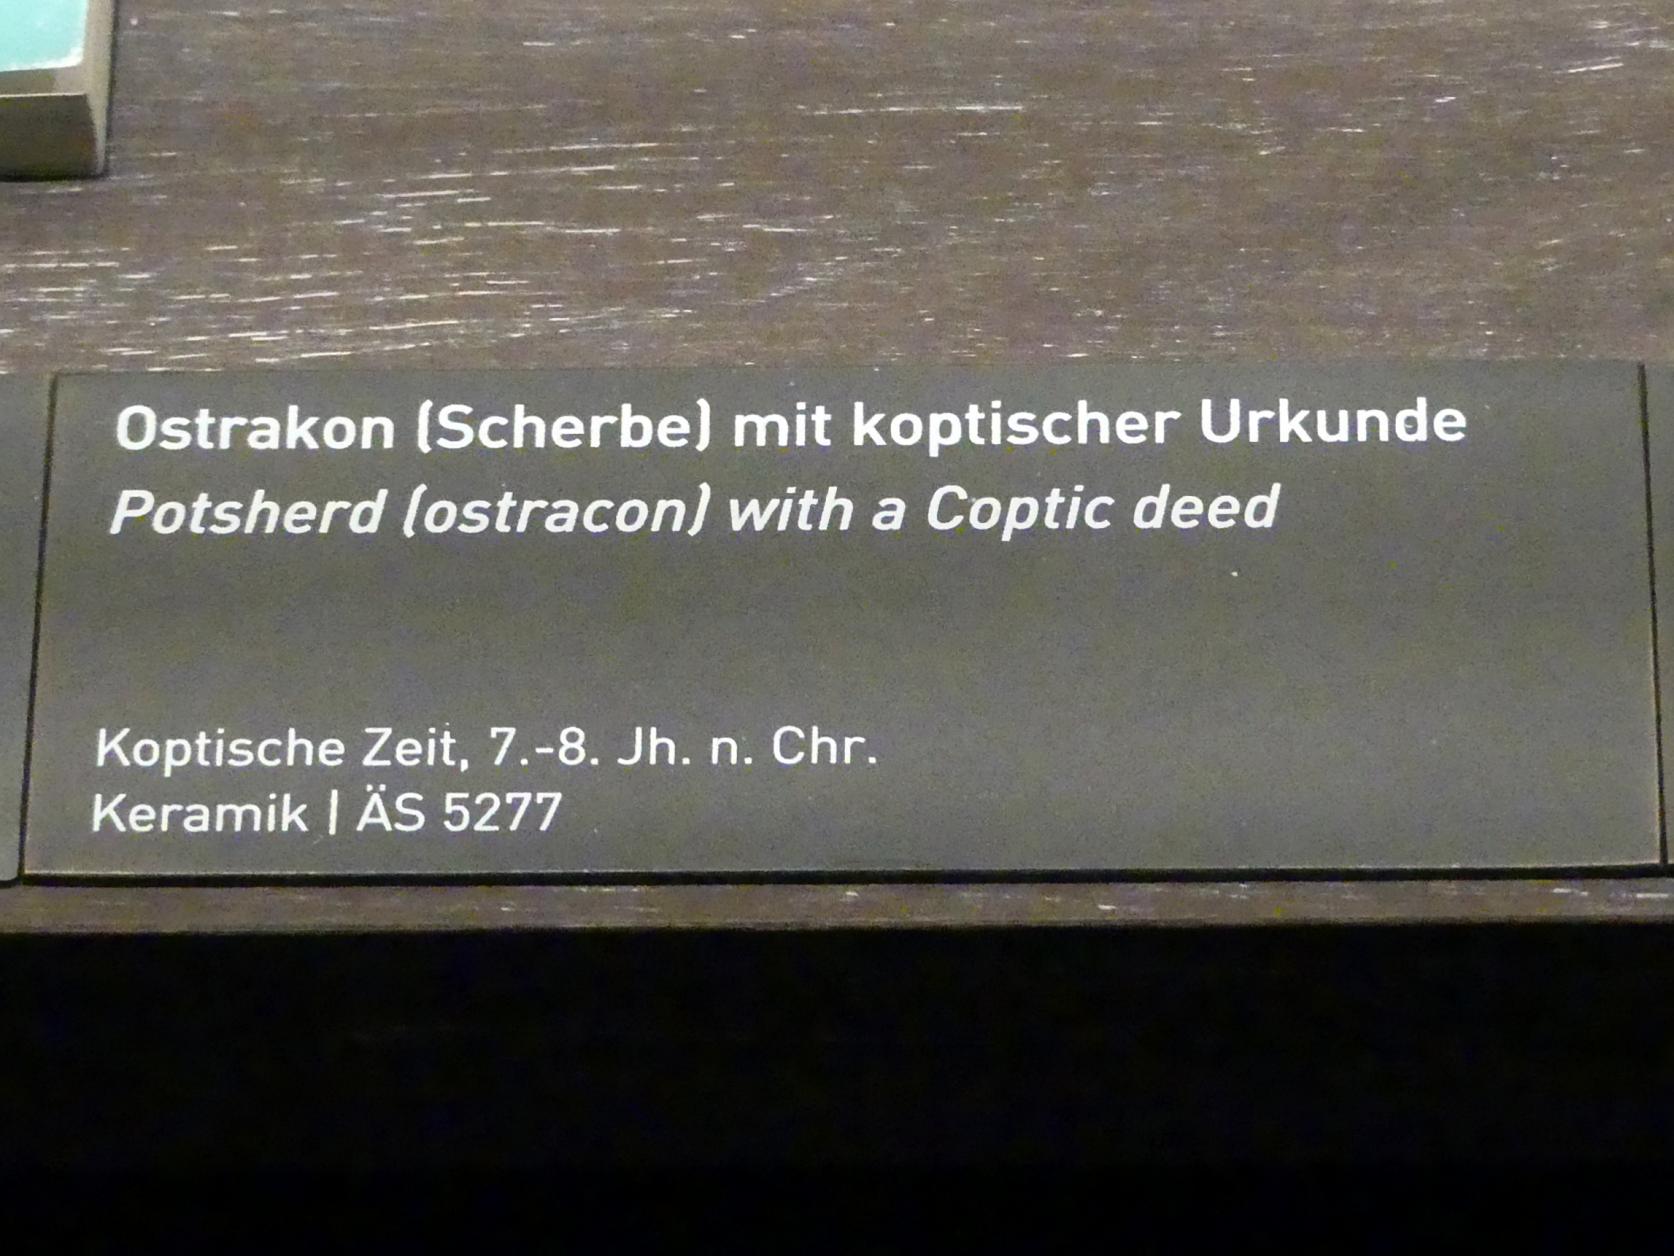 Ostrakon (Scherbe) mit koptischer Urkunde, Koptische Zeit, 200 - 800, 600 - 800, Bild 2/2